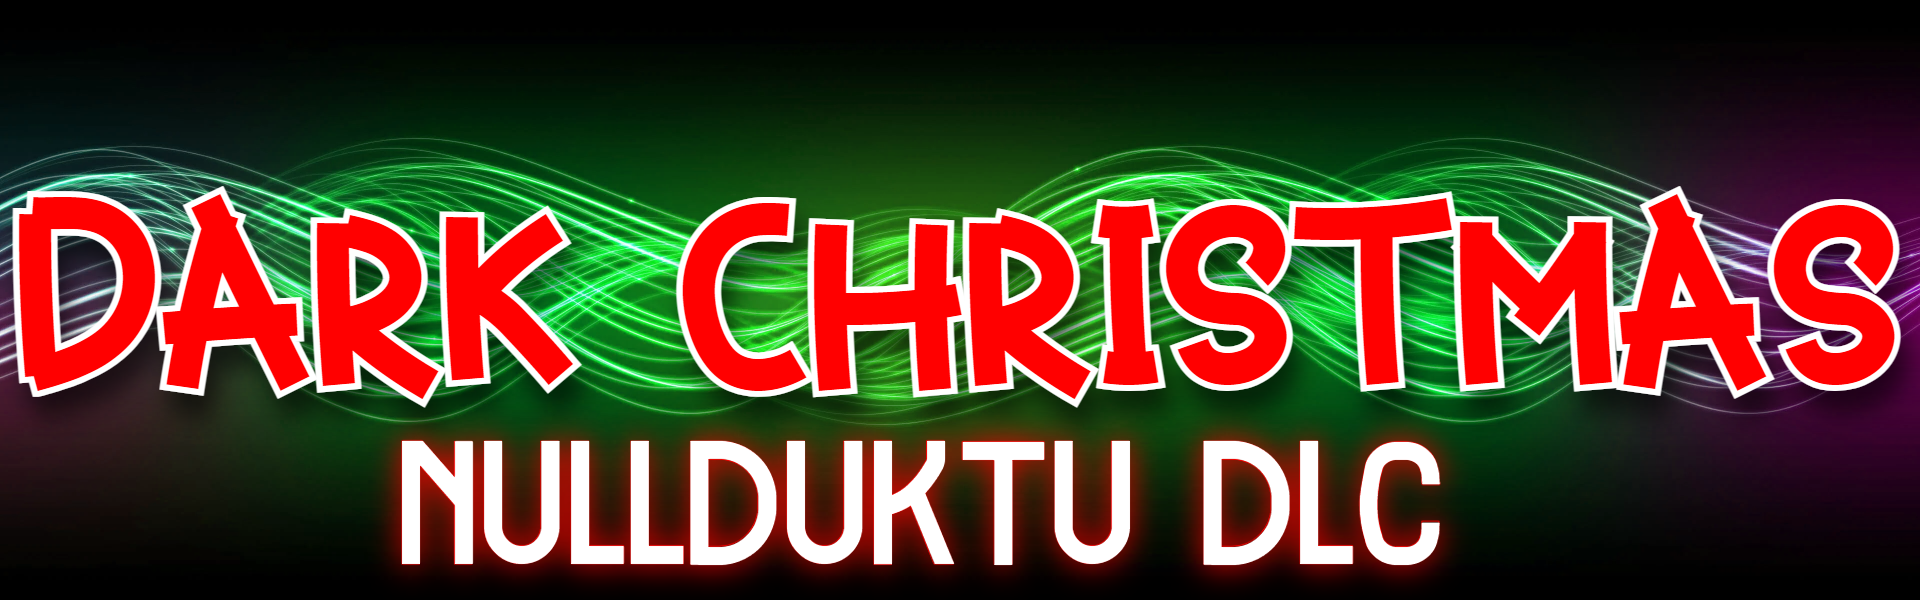 (NULLDUKTU DLC) DARK CHRISTMAS [BALDI MOD]V1.4.3 BASE GAME